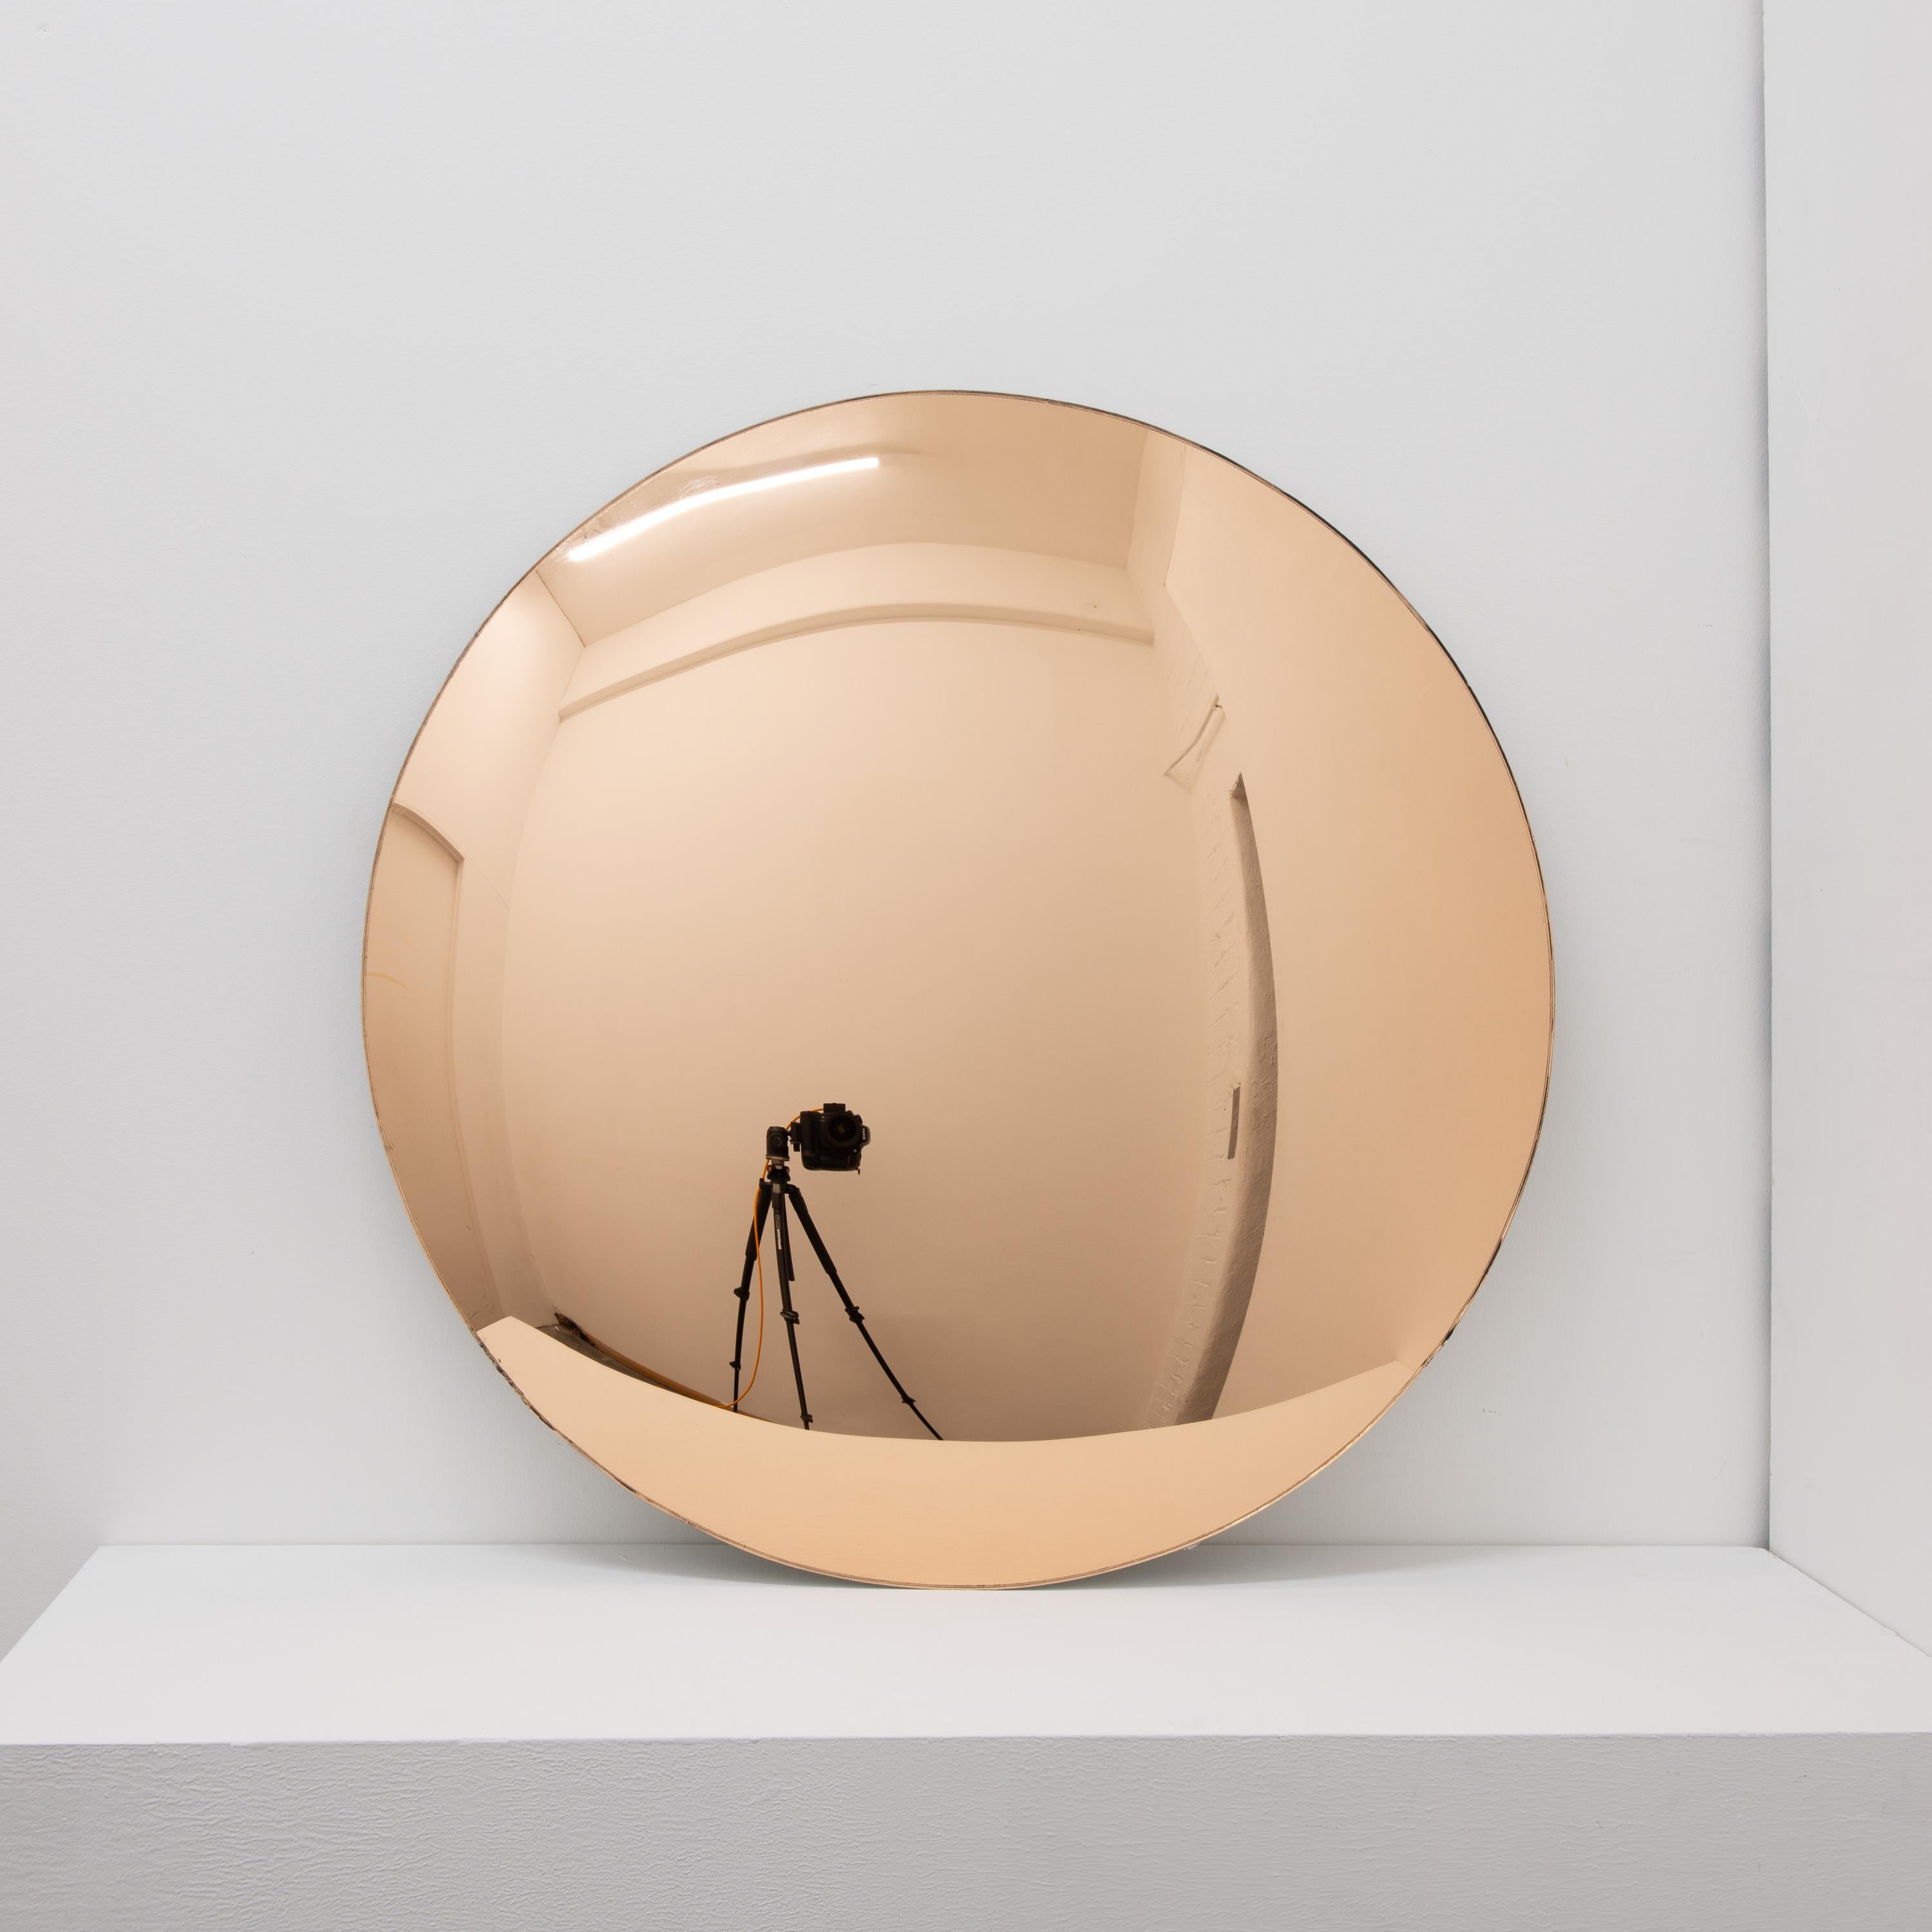 Superbe miroir convexe sans cadre, teinté d'or rose.
Clips en laiton en option.

Chaque miroir convexe Orbis™ est conçu et fabriqué à la main à Londres, au Royaume-Uni. De légères variations de taille et des imperfections sur les bords et les